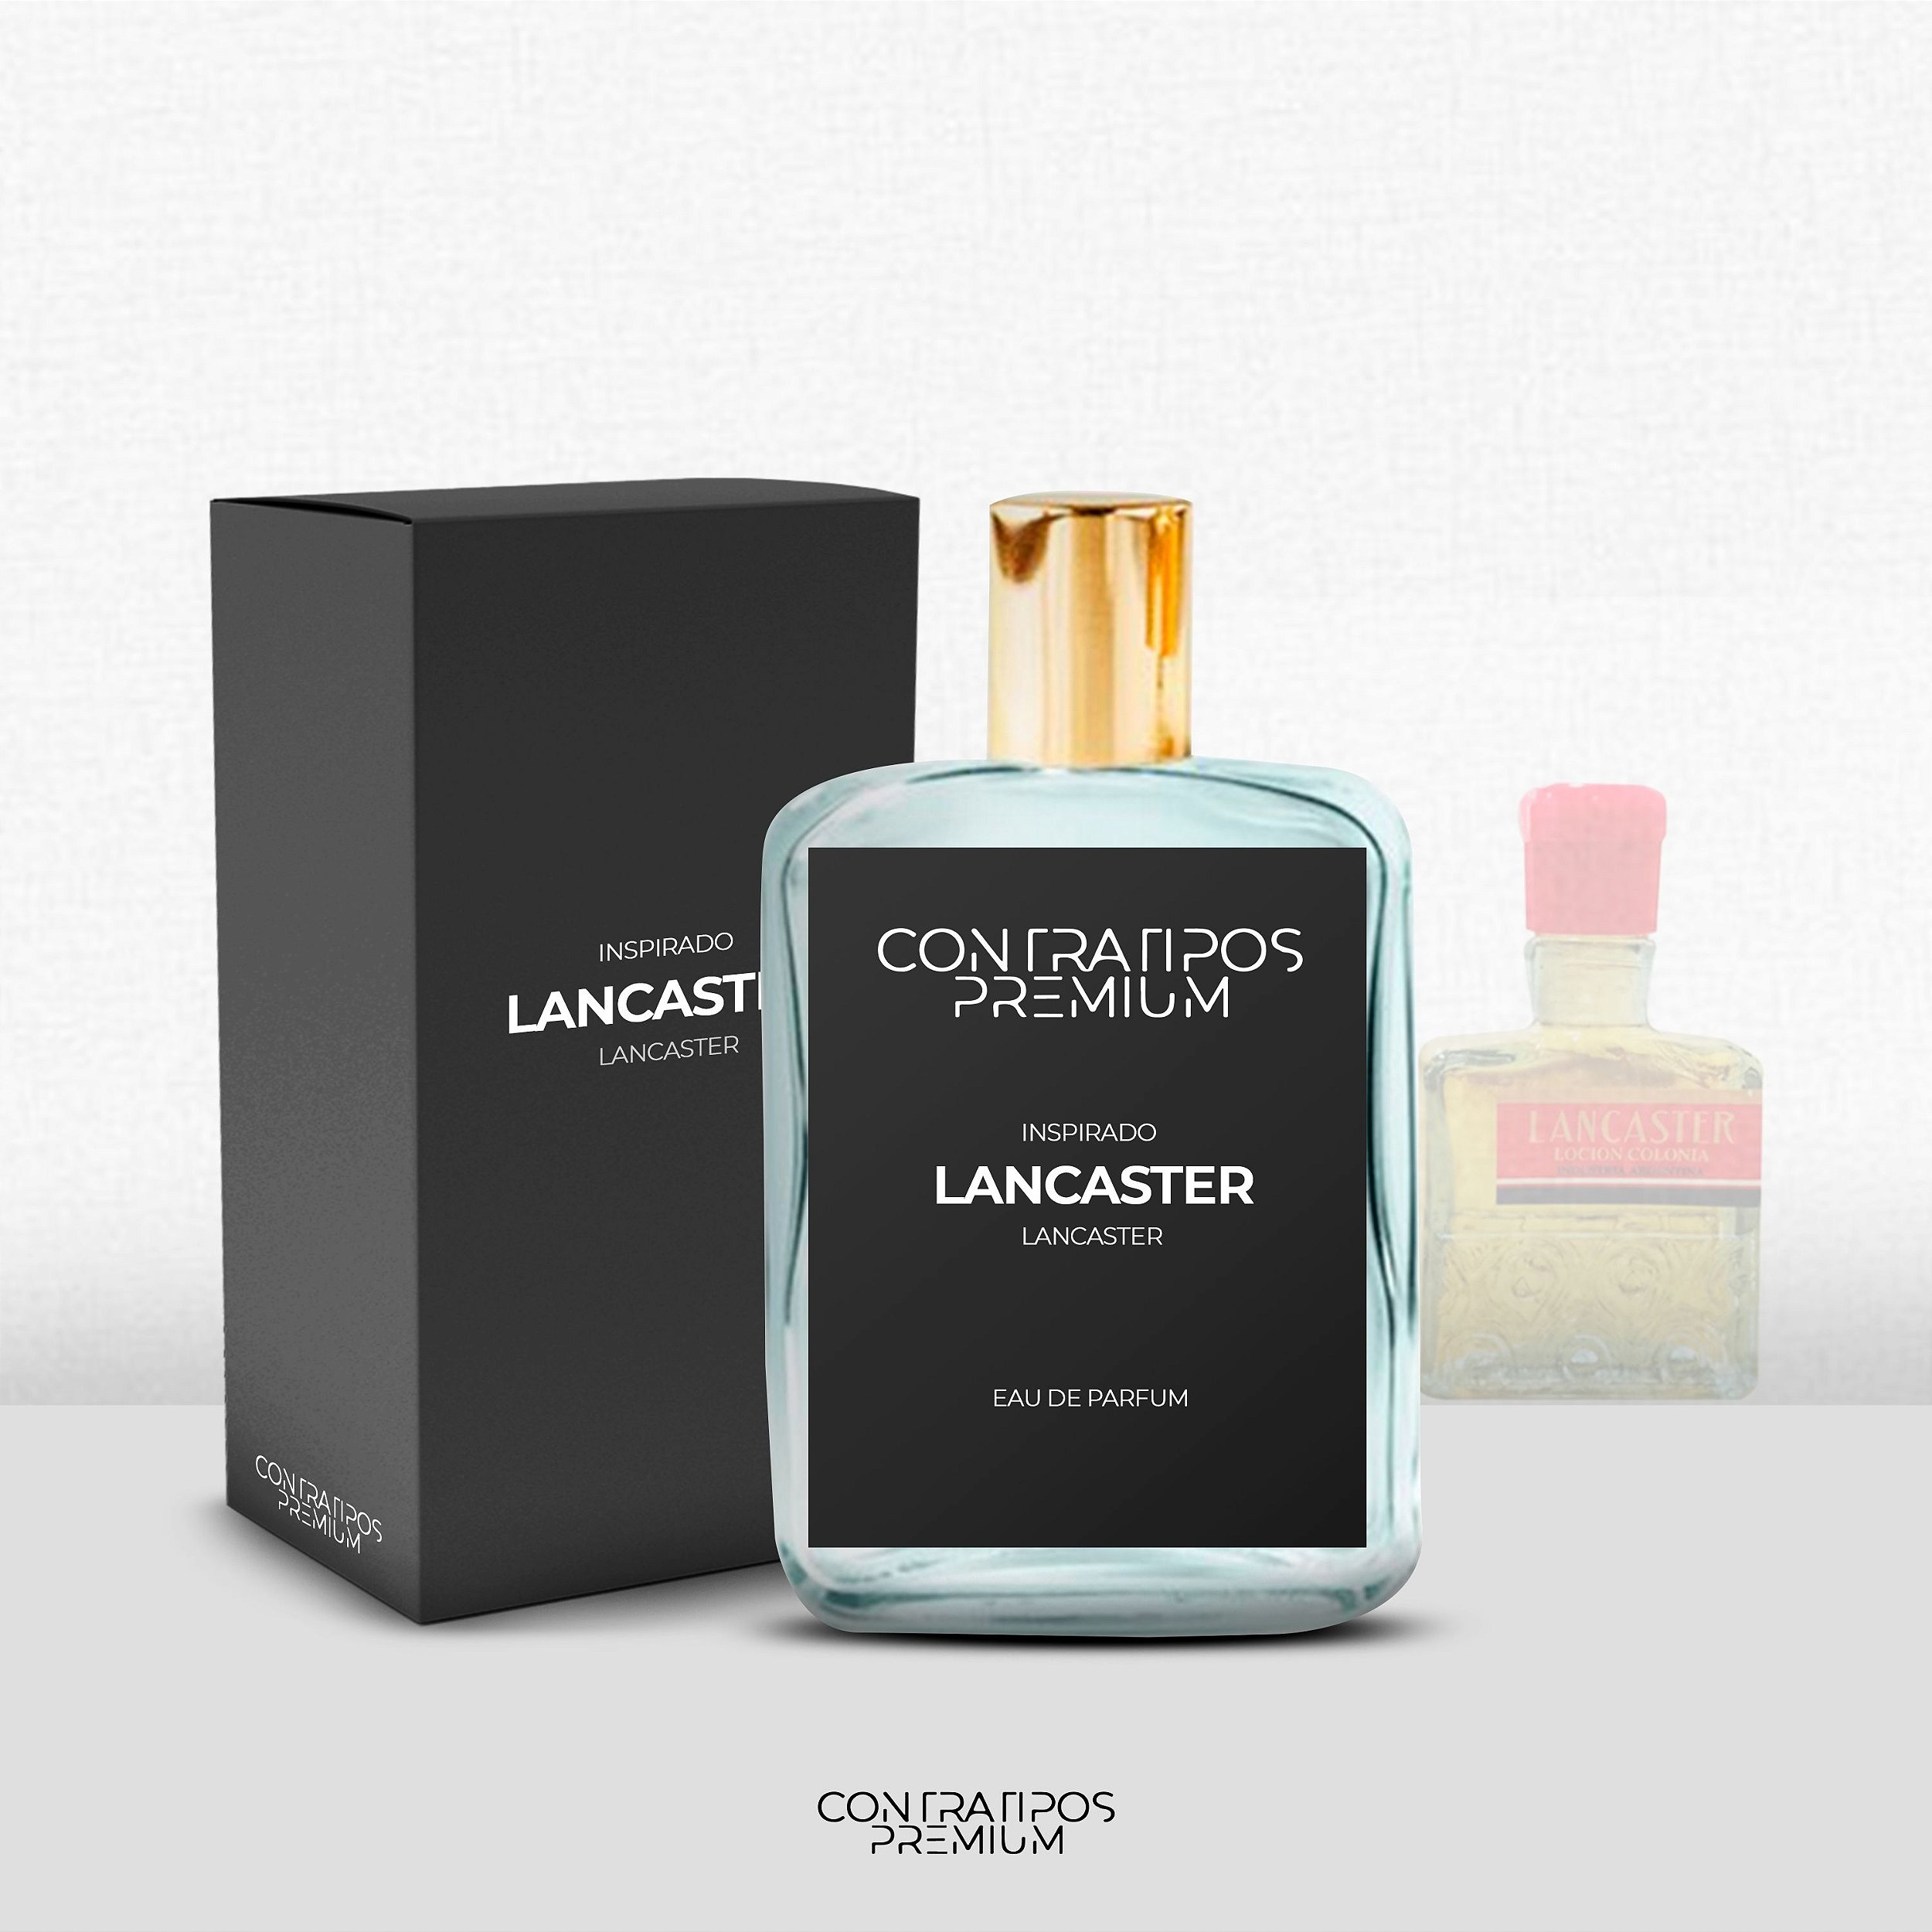 PERFUME CONTRATIPO - INSPIRADO LANCASTER MASCULINO - Loja  ContratiposPremium - Contratipos de perfumes originais - Perfumaria e  Essências